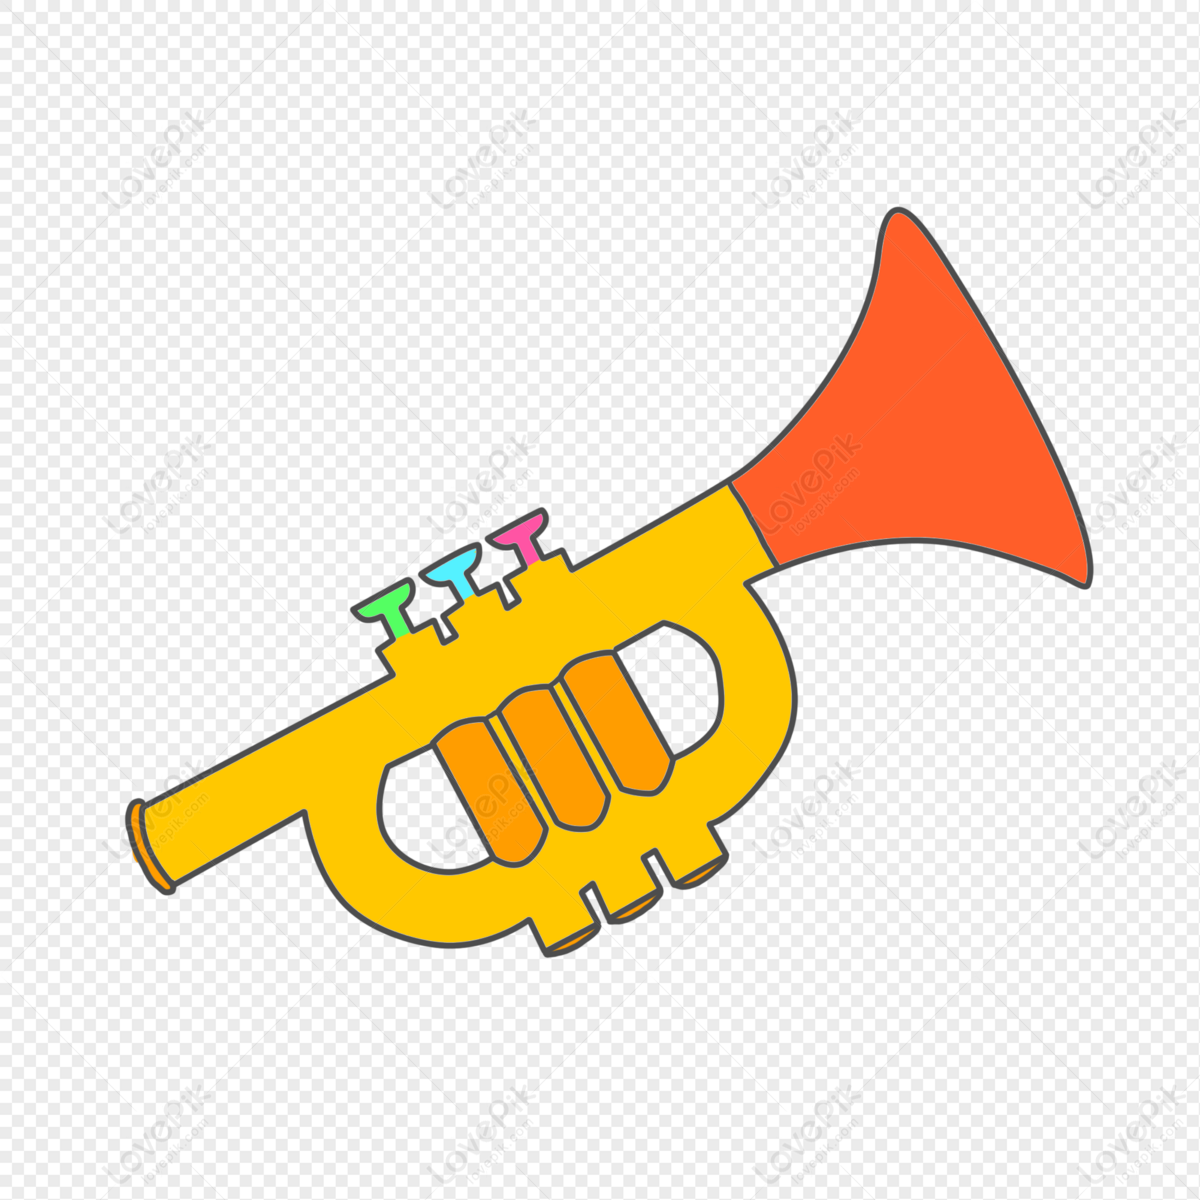 juguete de los niños de trompeta de oro 10463344 Vector en Vecteezy